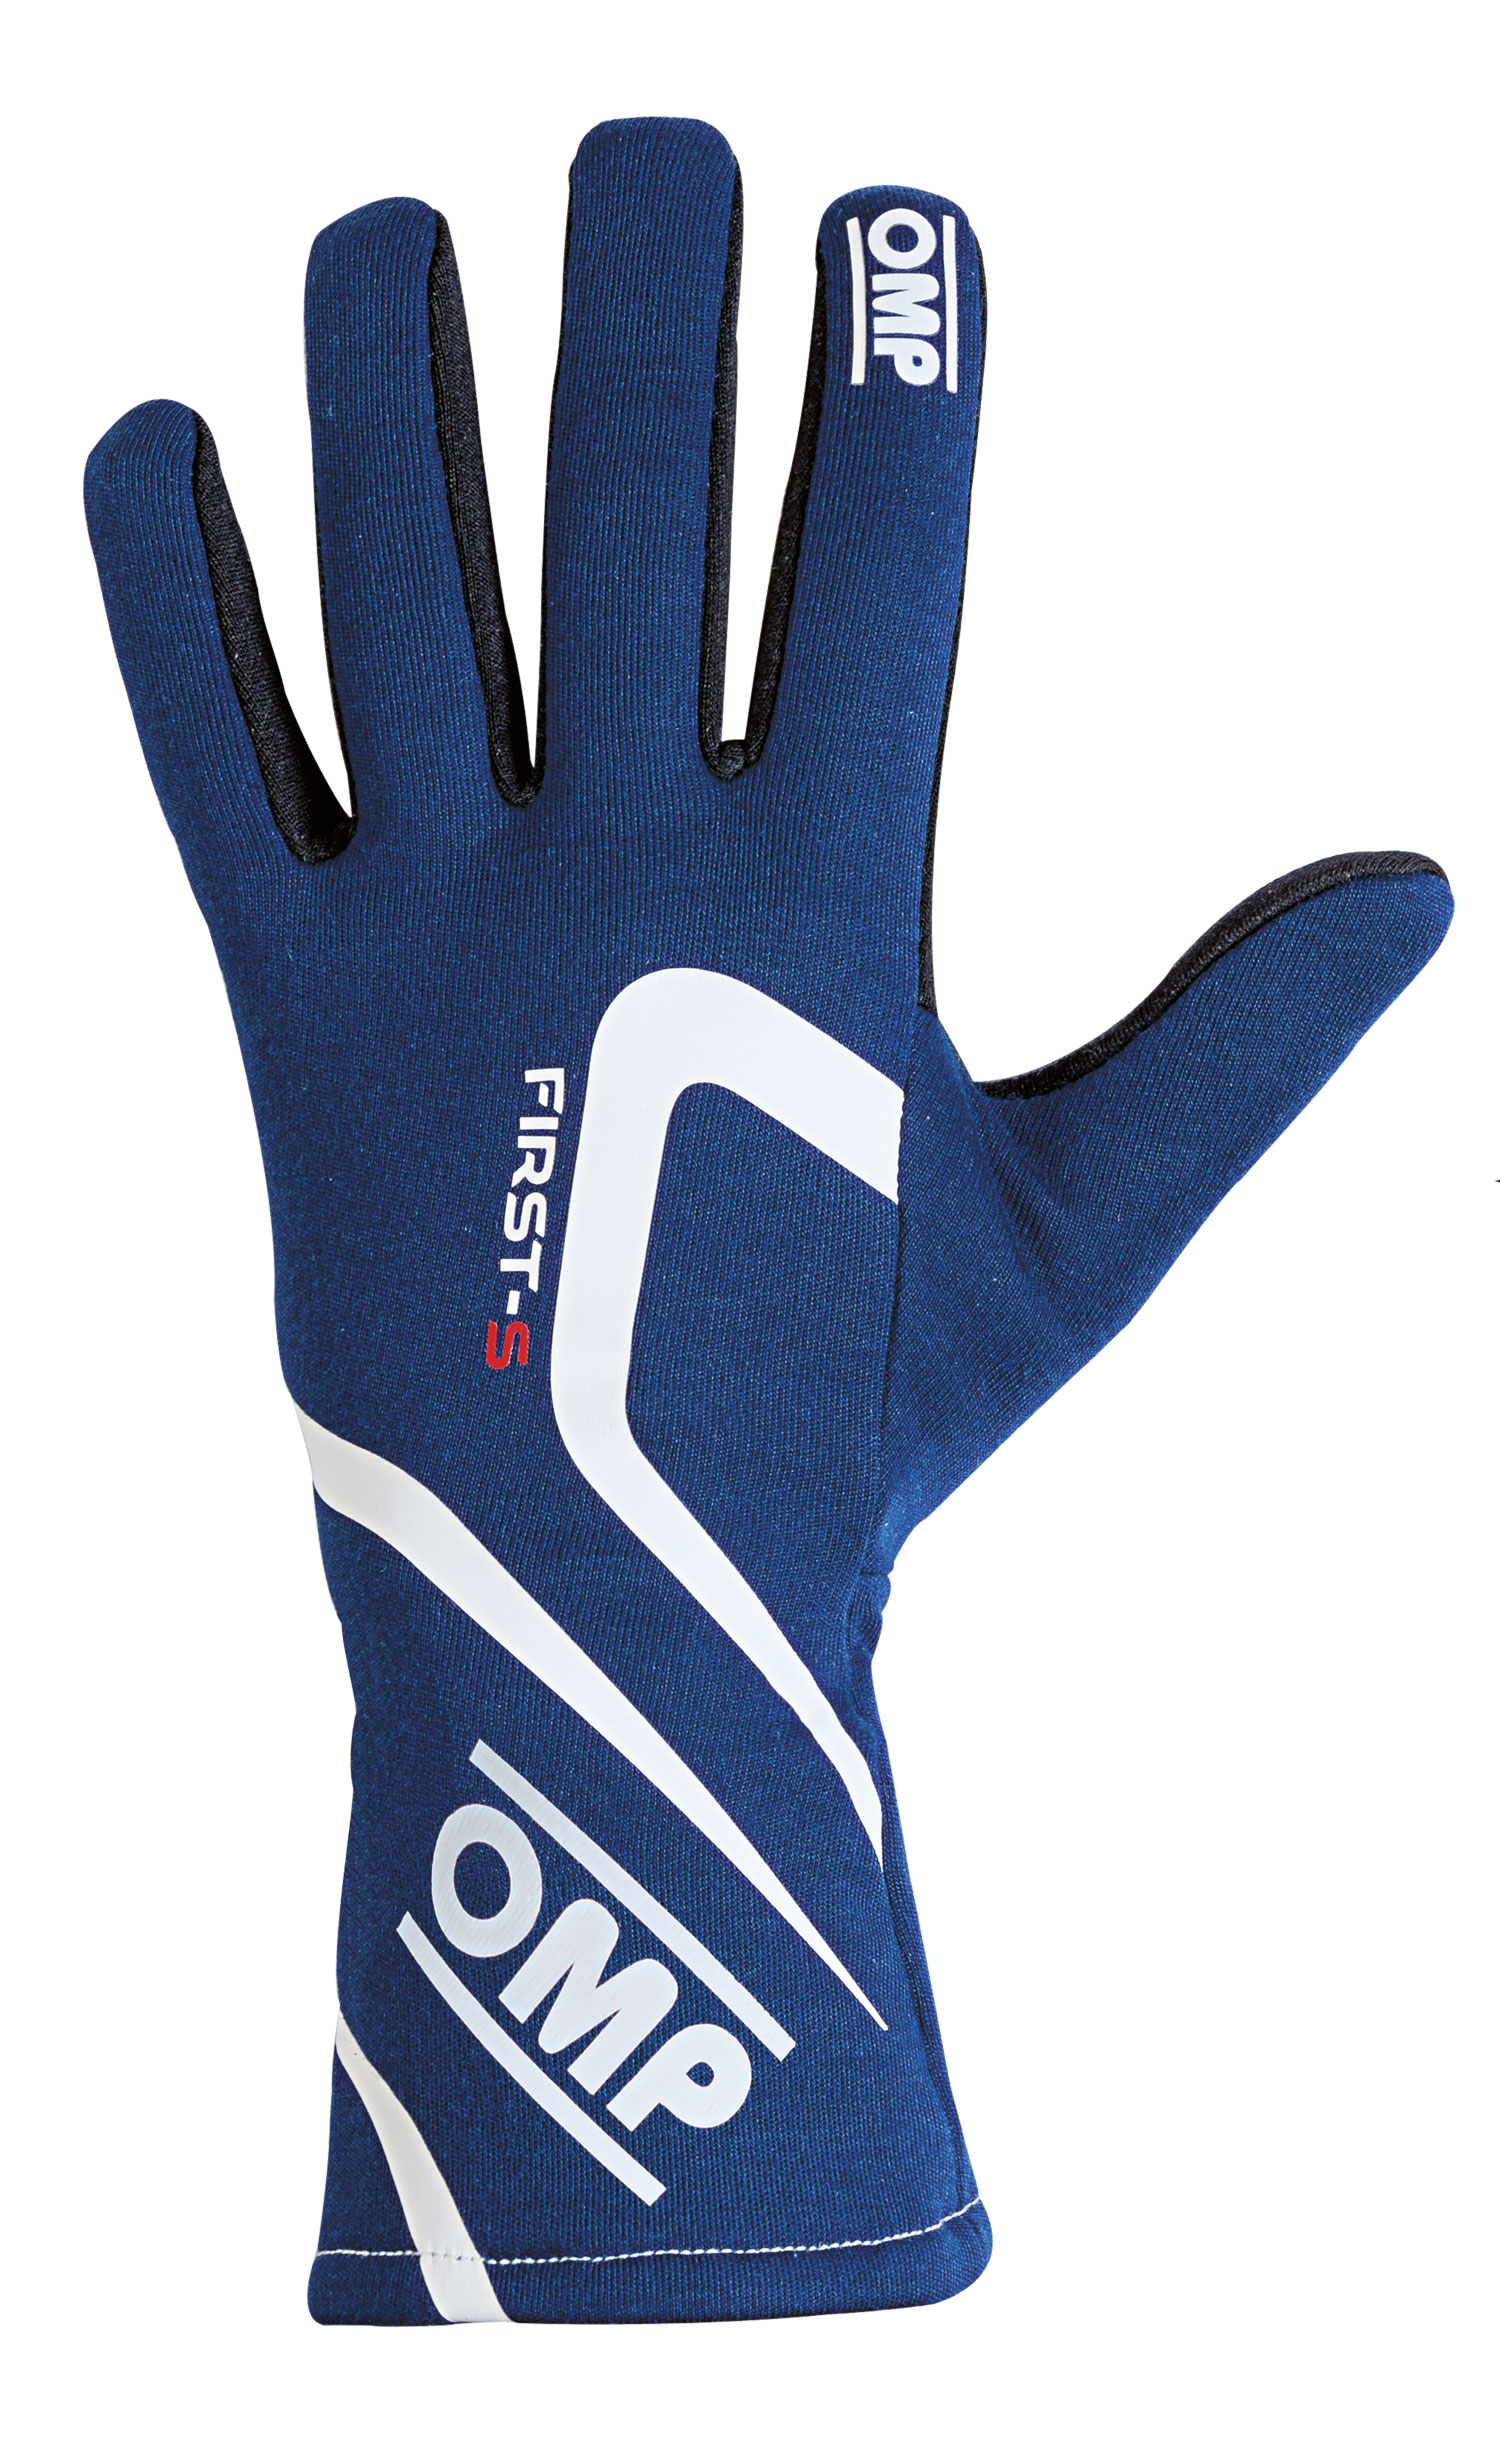 OMP Handschuhe First-S, blau